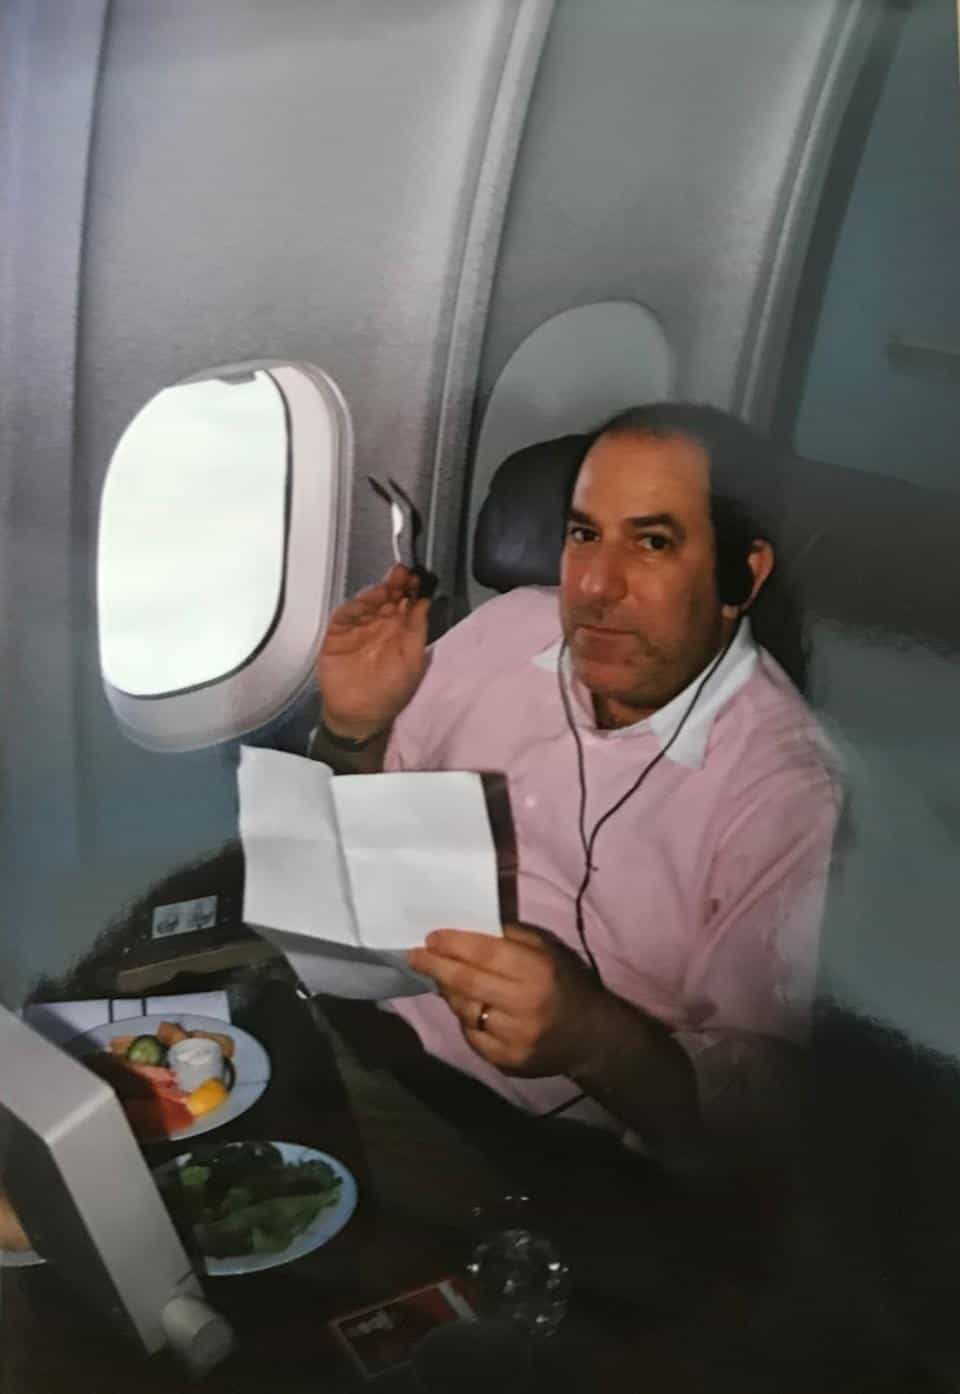 صورة لـ(ستيفن روثشتاين) وهو يتناول وجبته على متن رحلة جوية دولية، حوالي سنة 1996/1997.